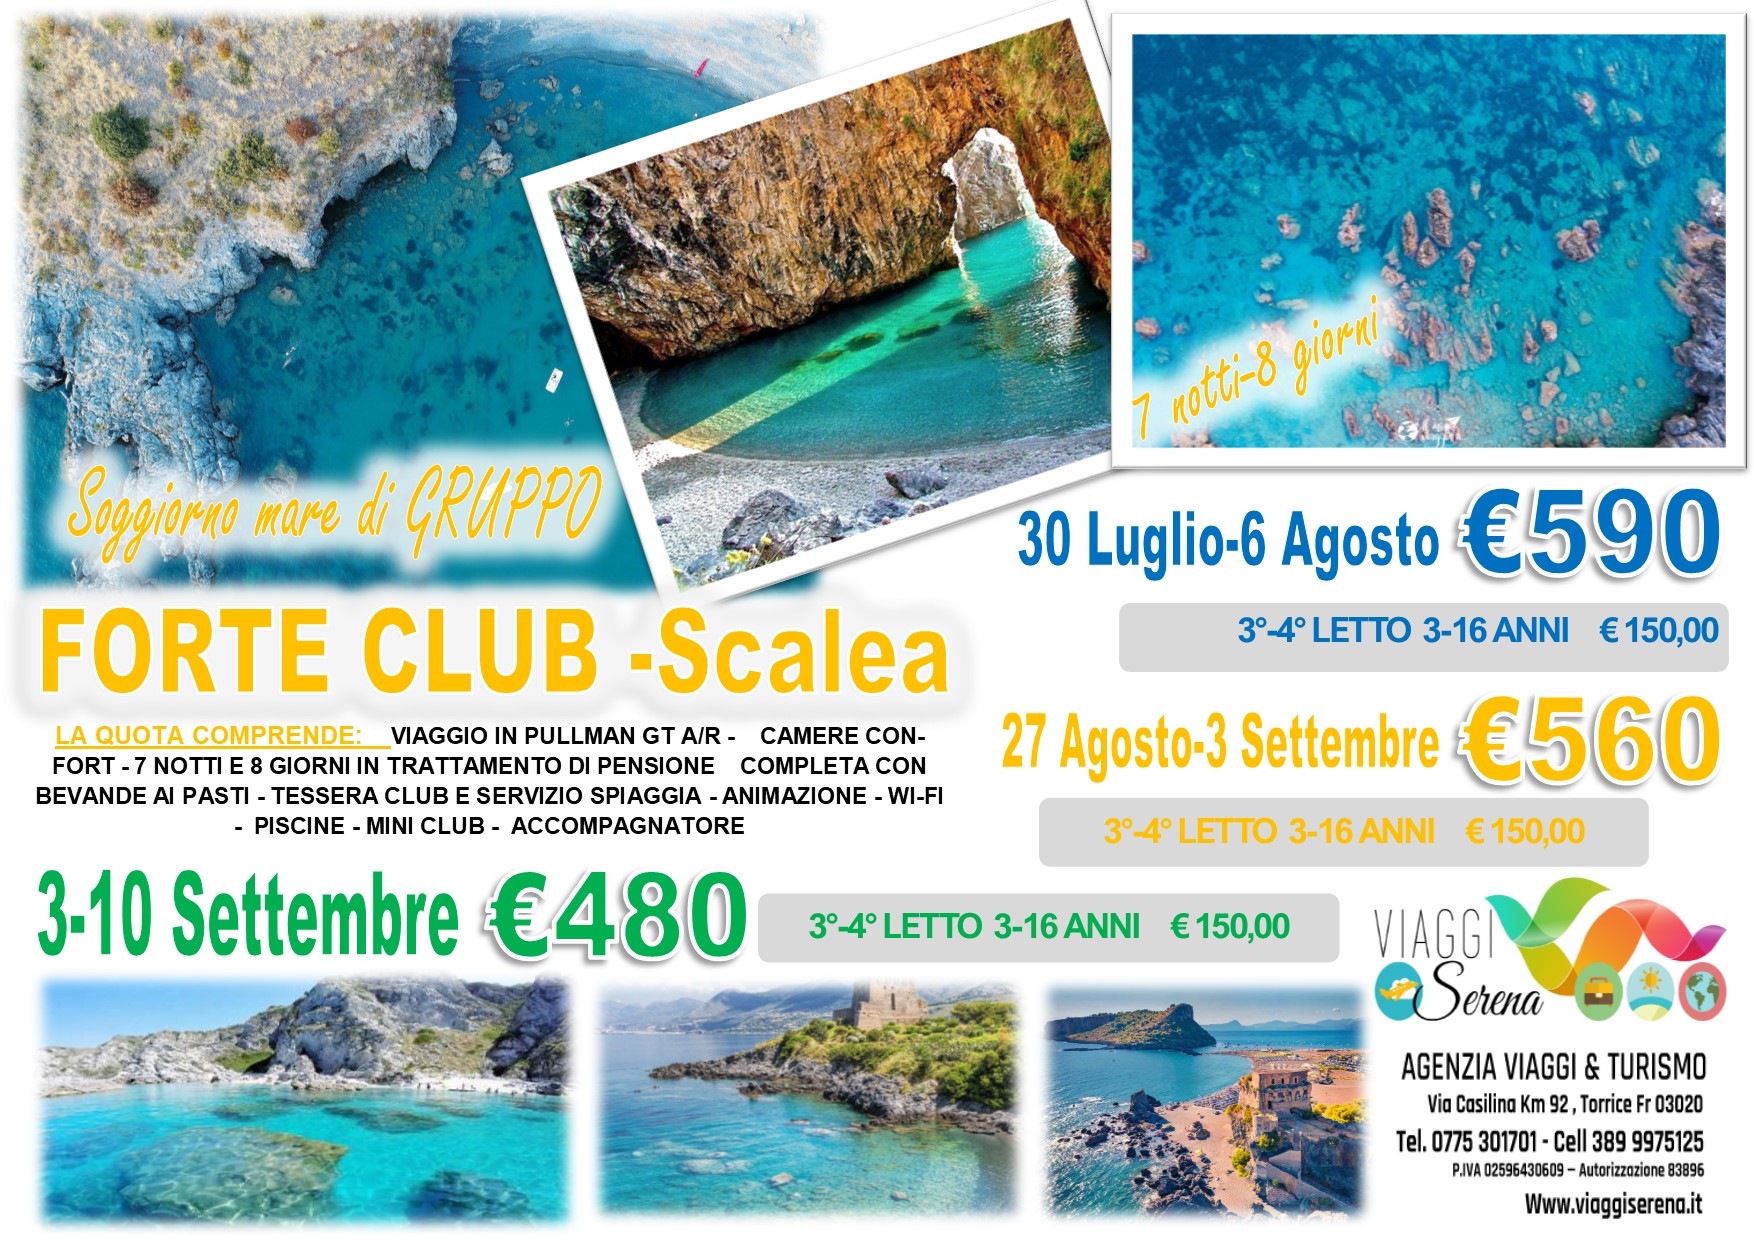 Viaggi di Gruppo: Soggiorno Mare “Villaggio Forte Club” Scalea 30 Luglio 6 Agosto €590,00